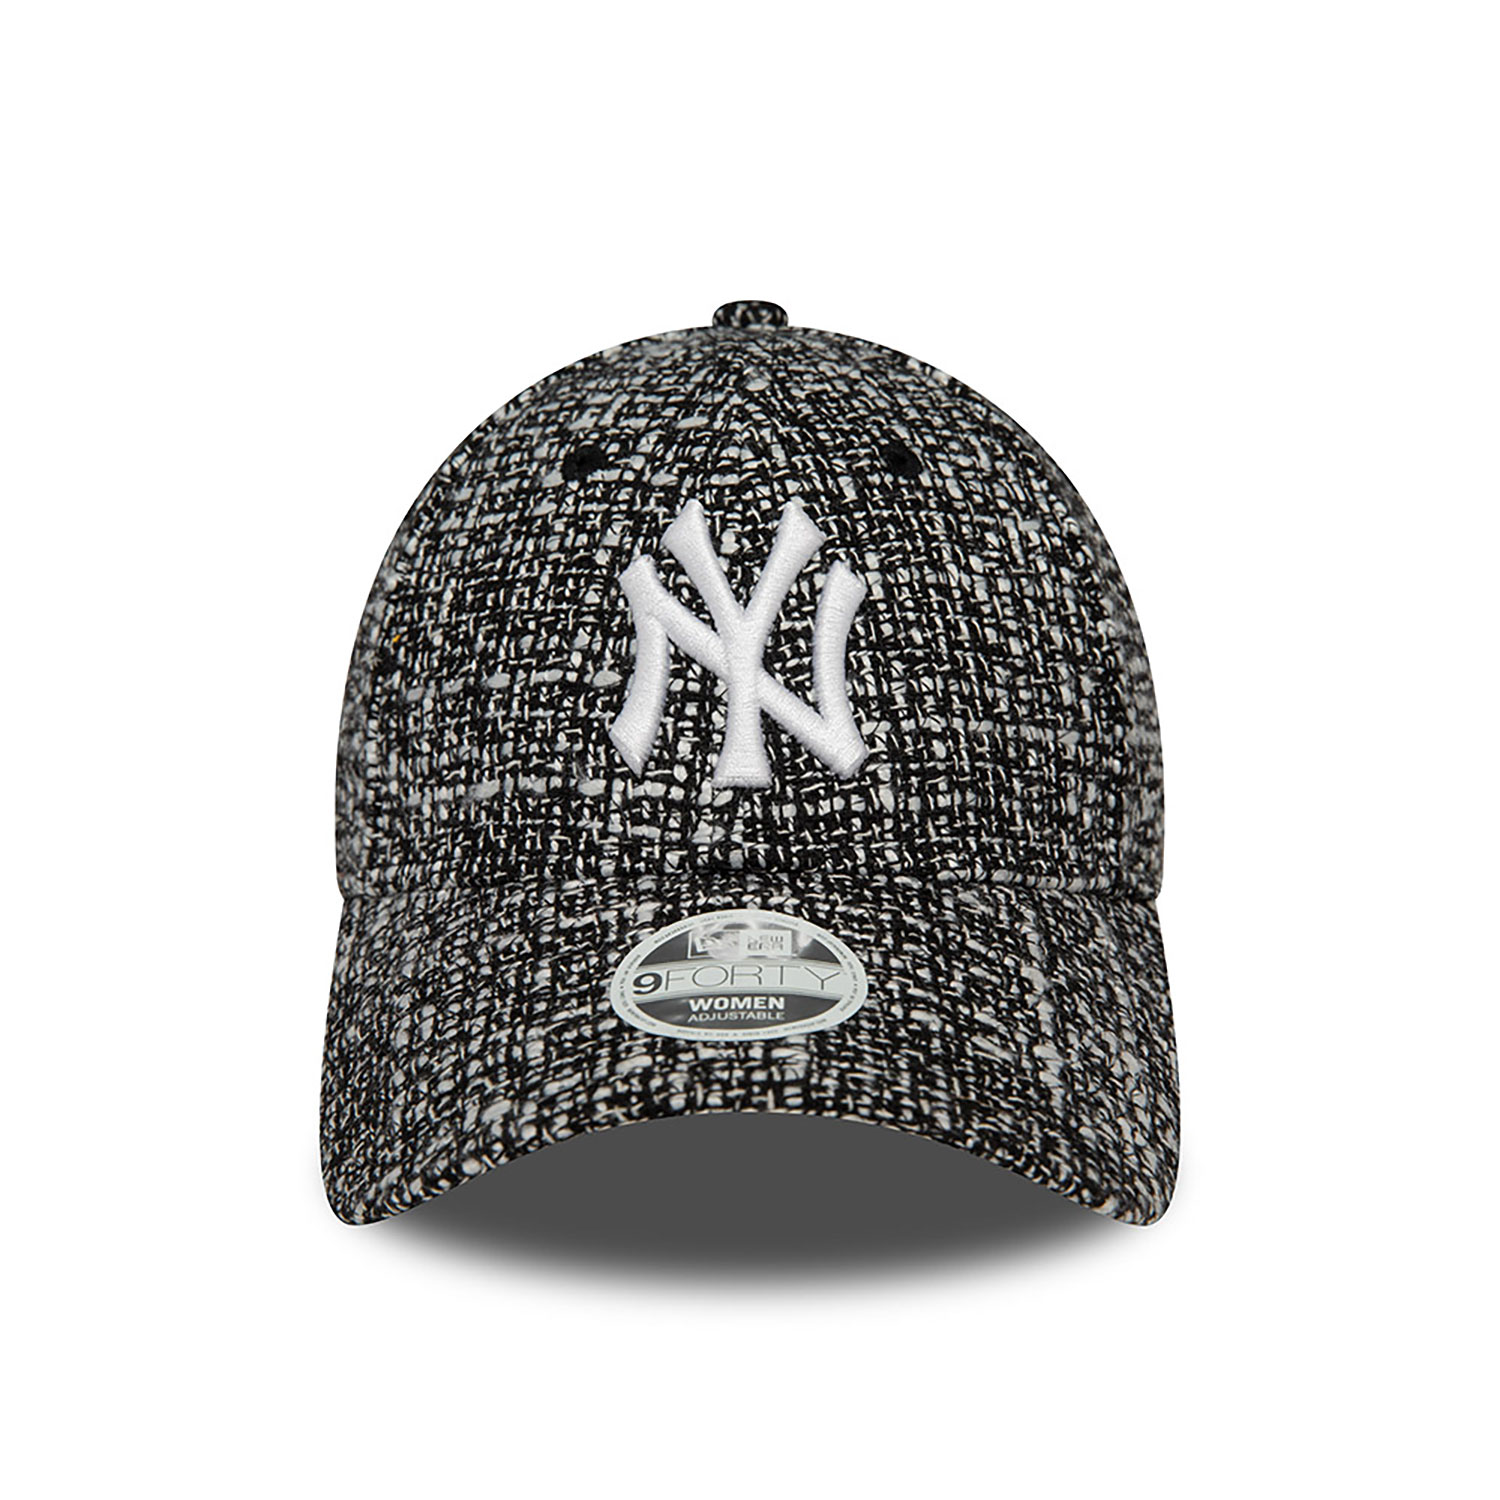 New York Yankees Womens Summer Tweed Black 9FORTY Adjustable Cap